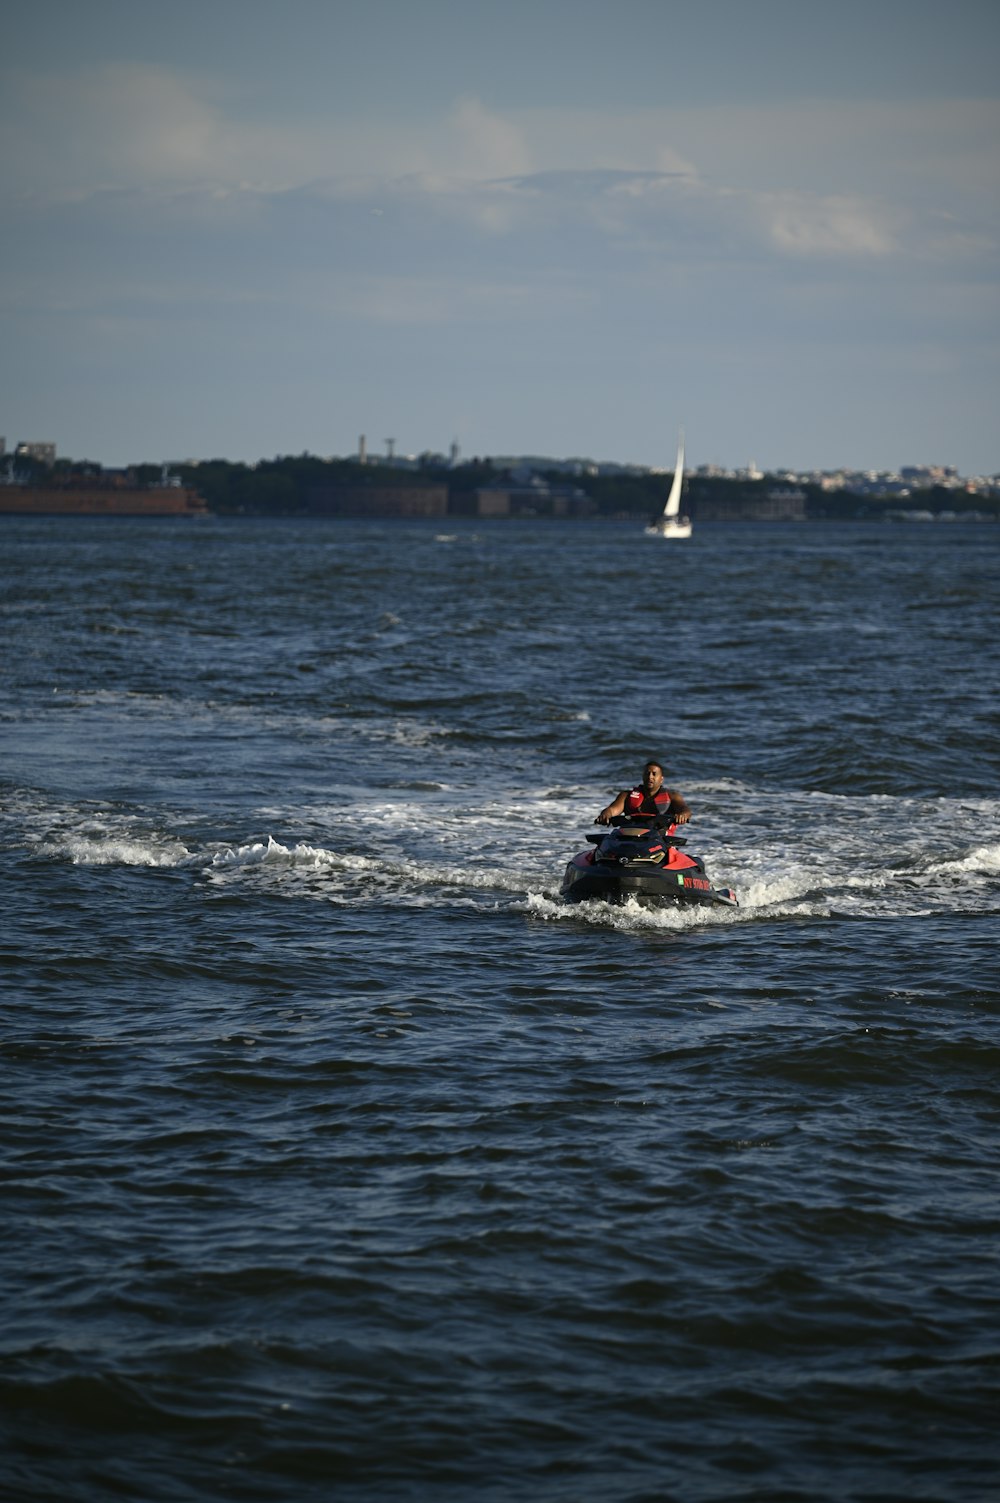 Uomo in giubbotto rosso e nero che cavalca sul kayak rosso in mare durante il giorno